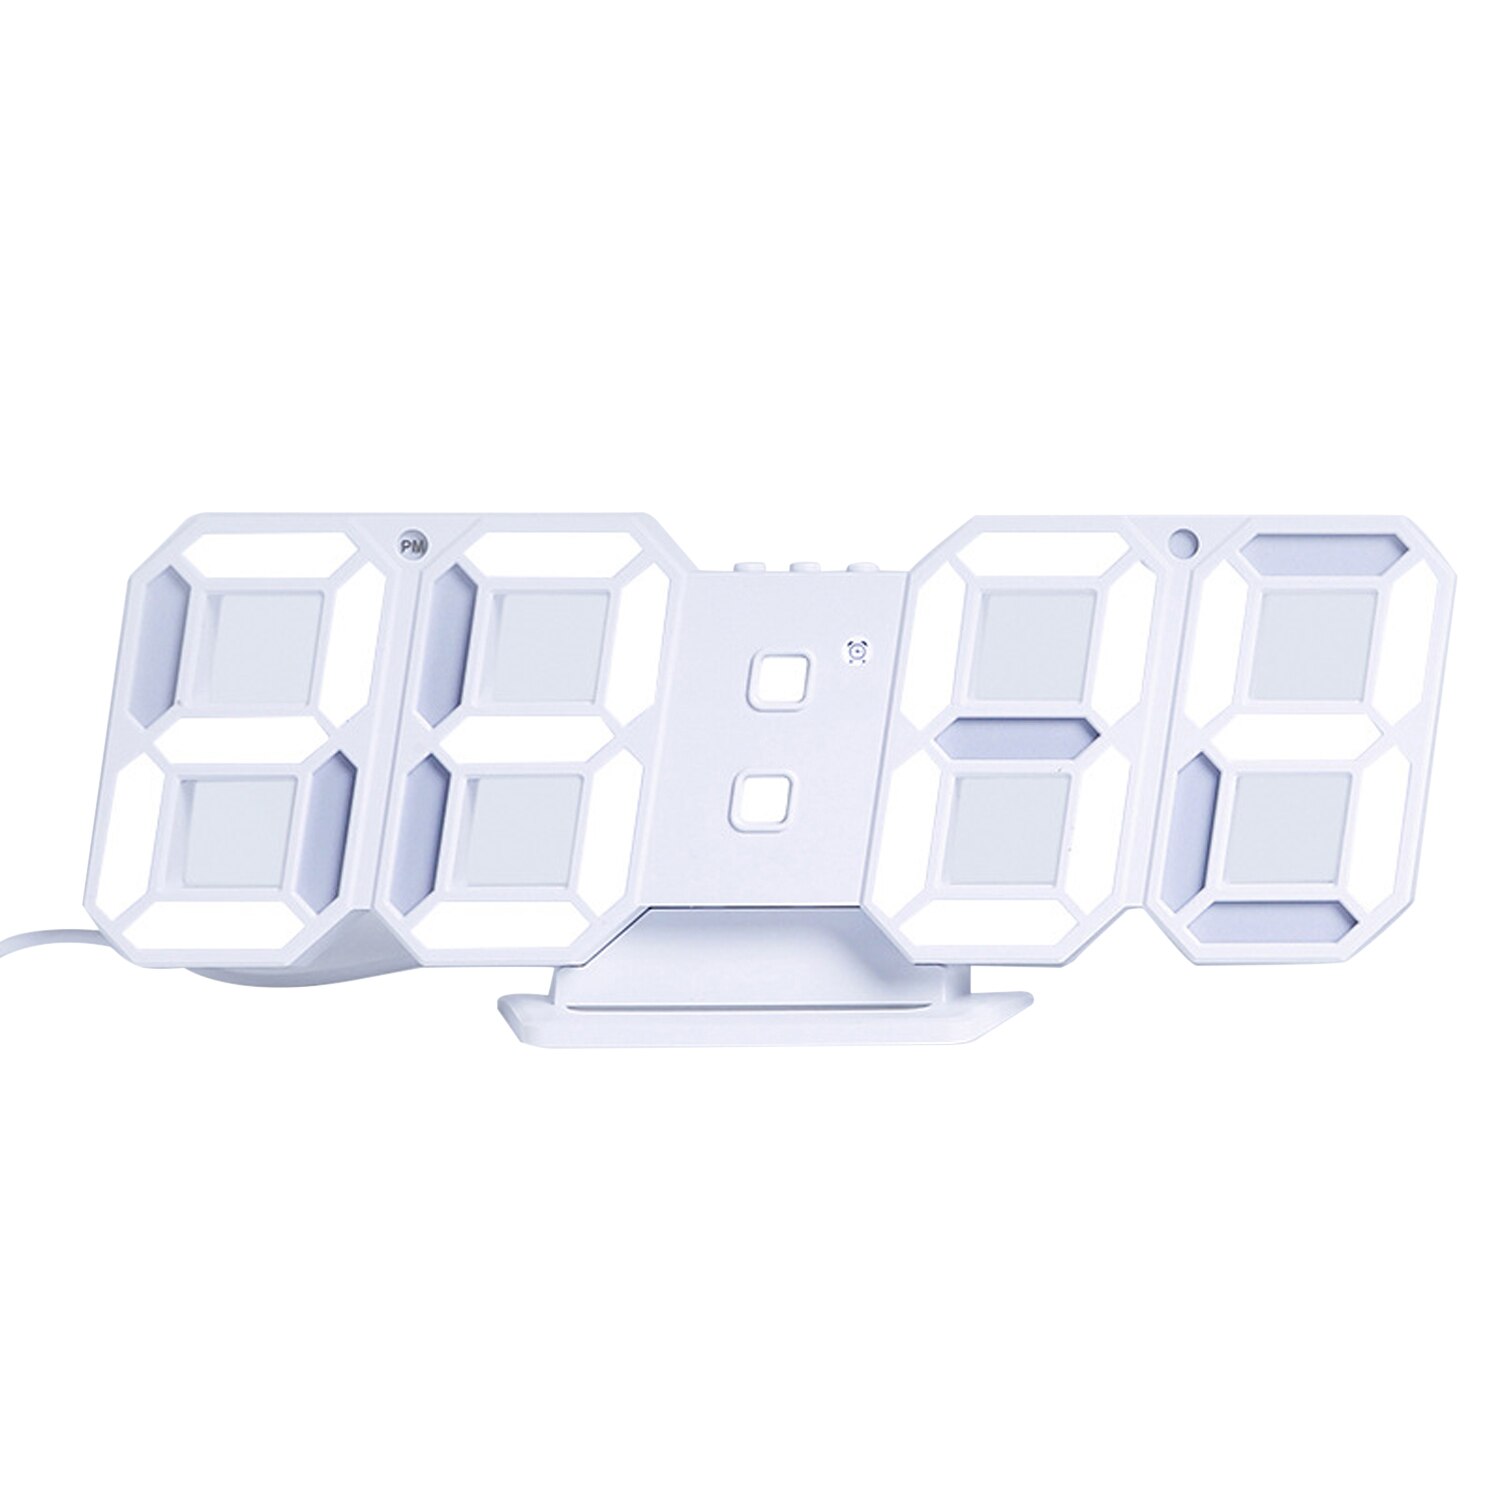 3D LED Digital Uhr Uhr Elektronische Tisch Uhr Wec – Grandado